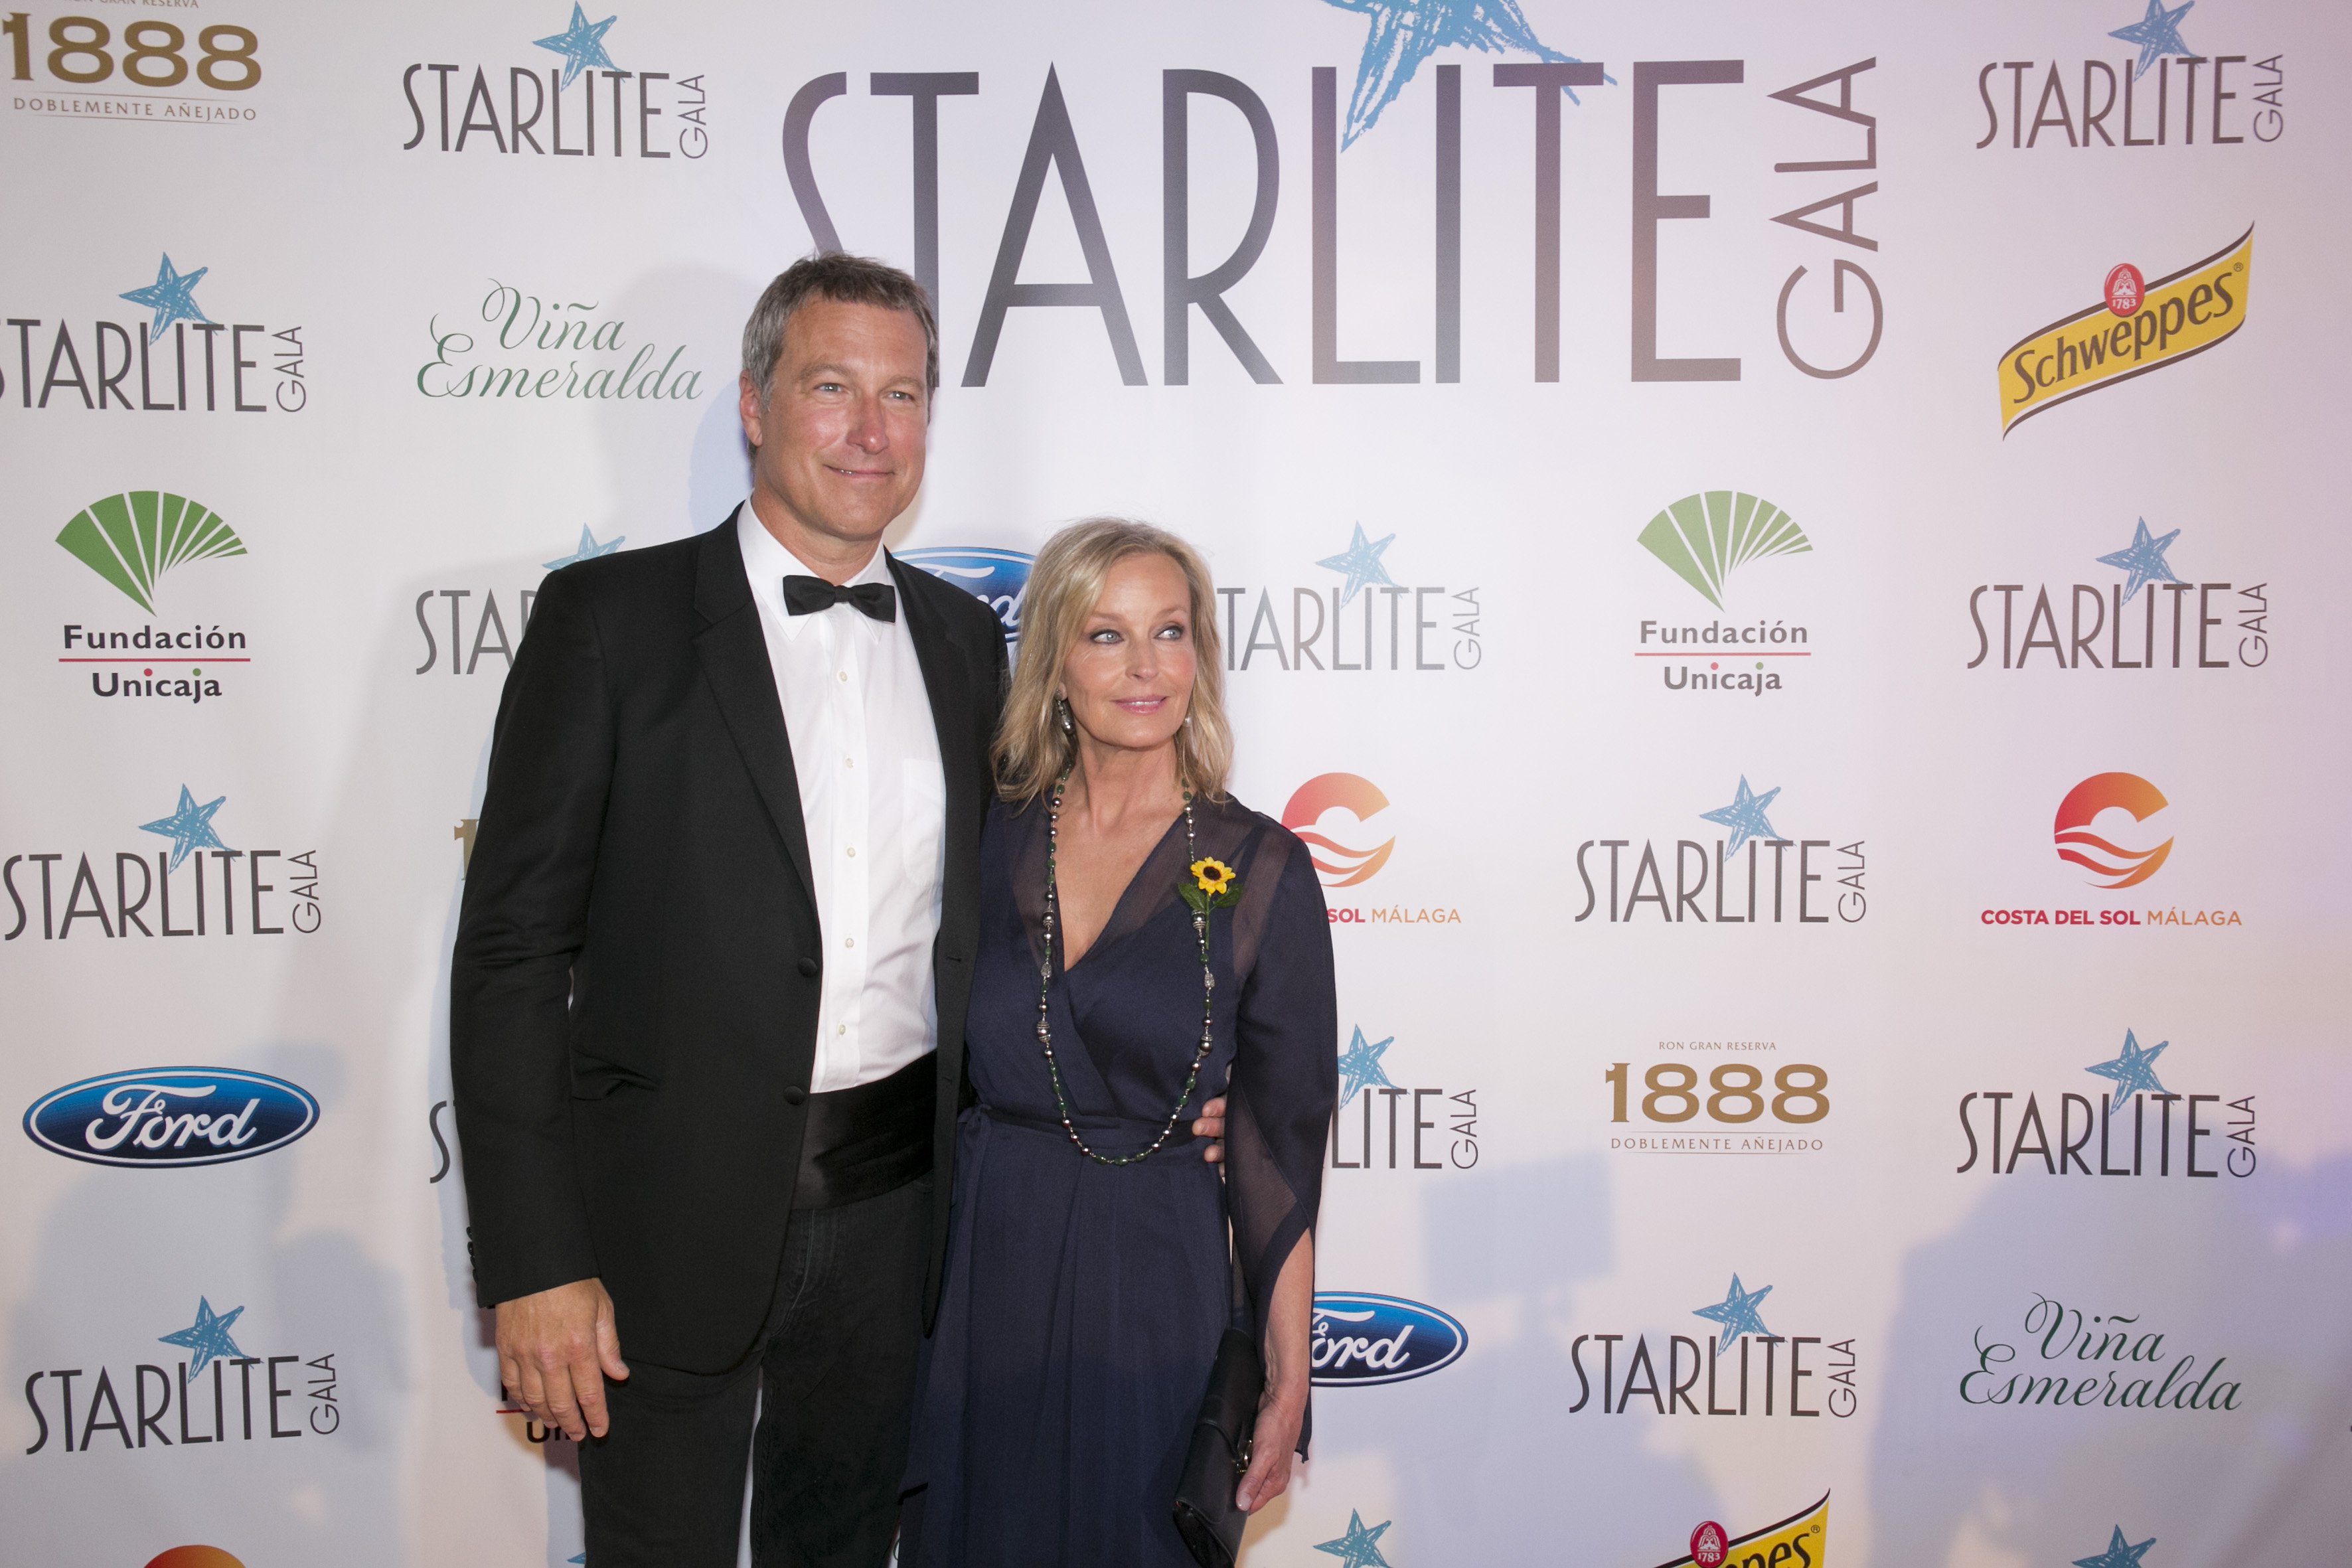 Ο John Corbett και ο Bo Derek παρευρίσκονται στο Starlite Gala στις 11 Αυγούστου 2018 στη Marbella της Ισπανίας |  Πηγή: Getty Images